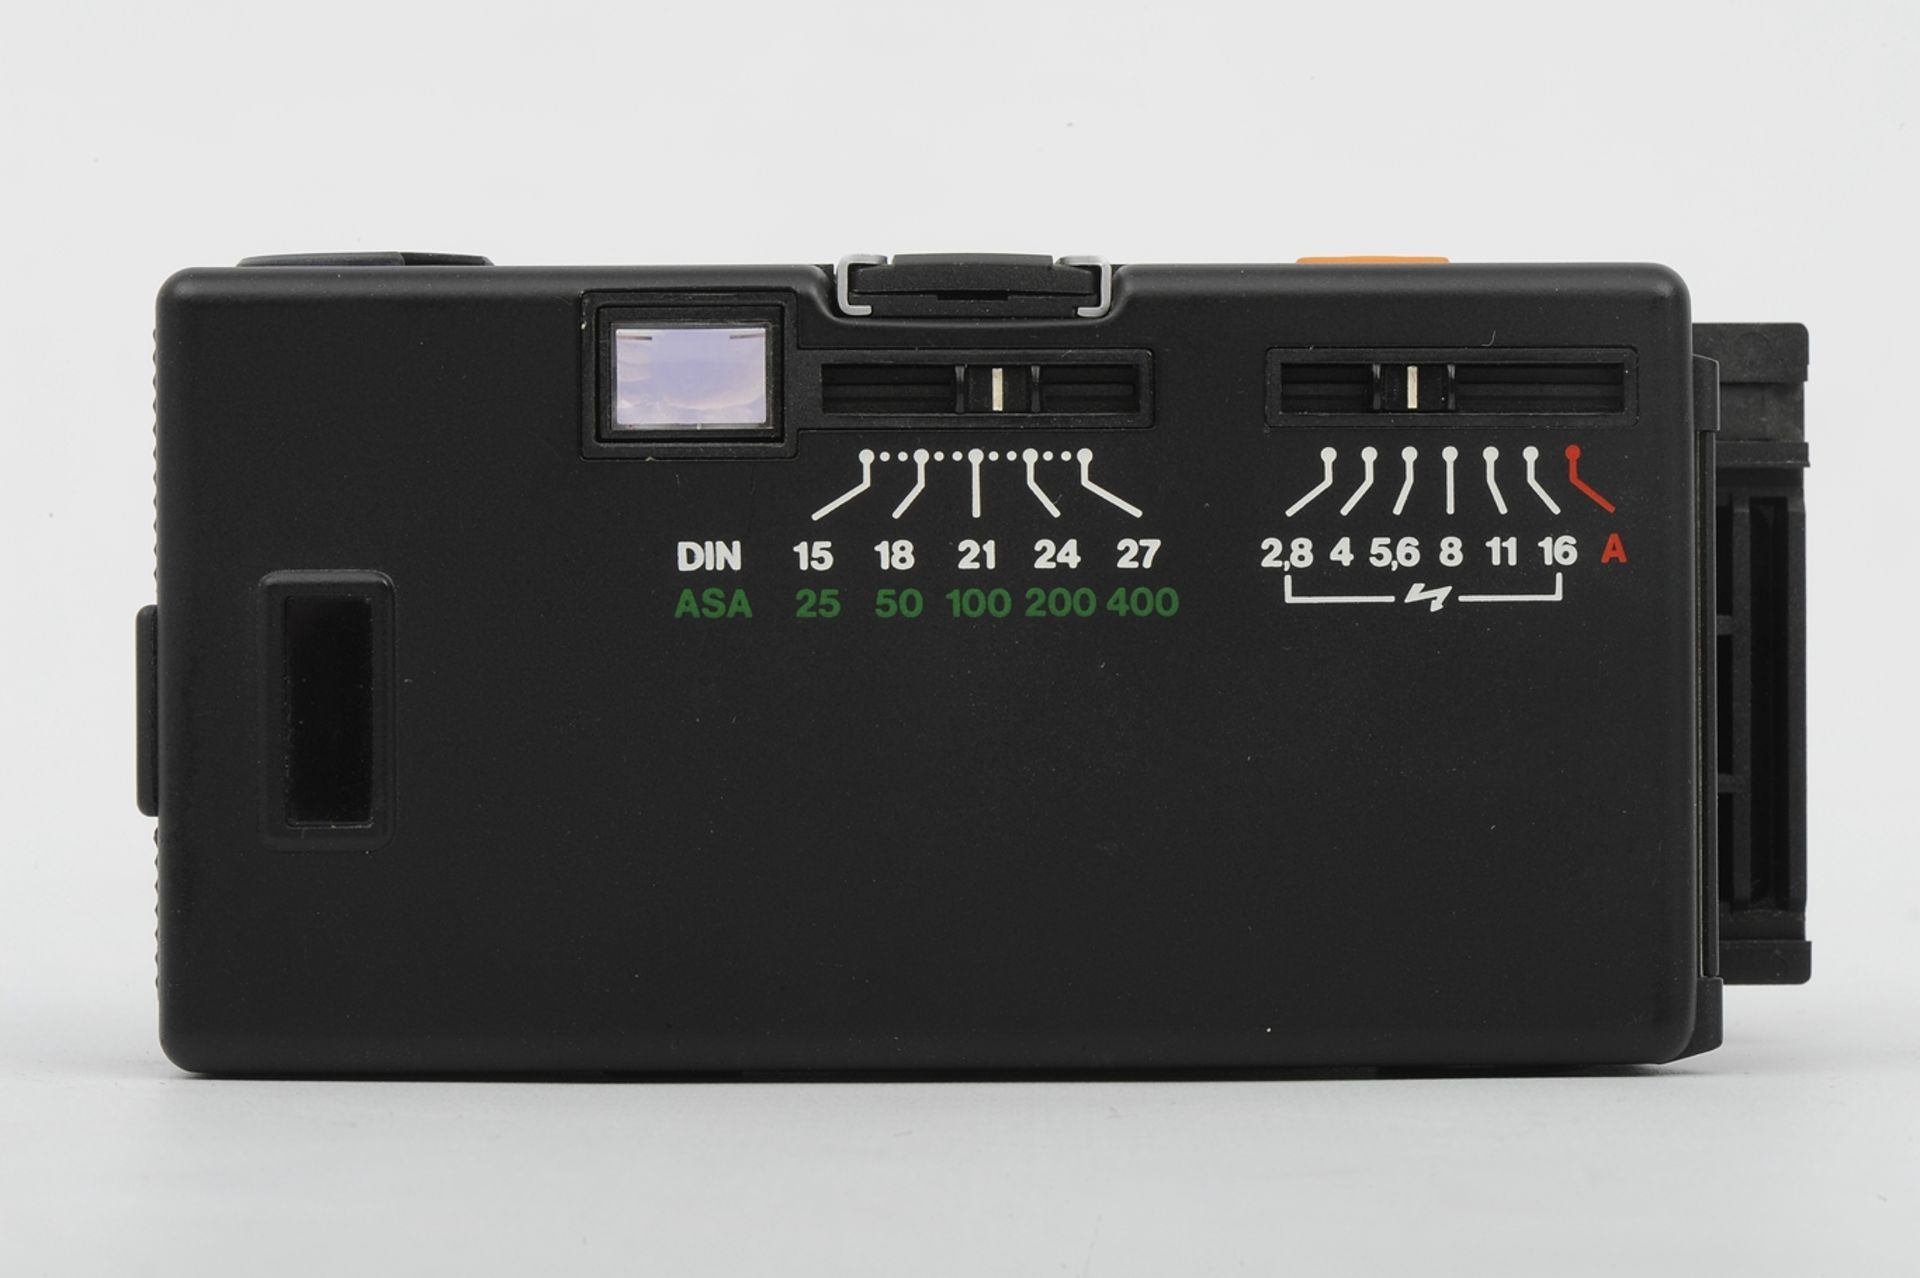 6teiliges Konvolut "ROLLEI" - Kameras und Zubehör, bestehend aus: 1 x 35T (unvollendete Reparatur), - Image 9 of 19